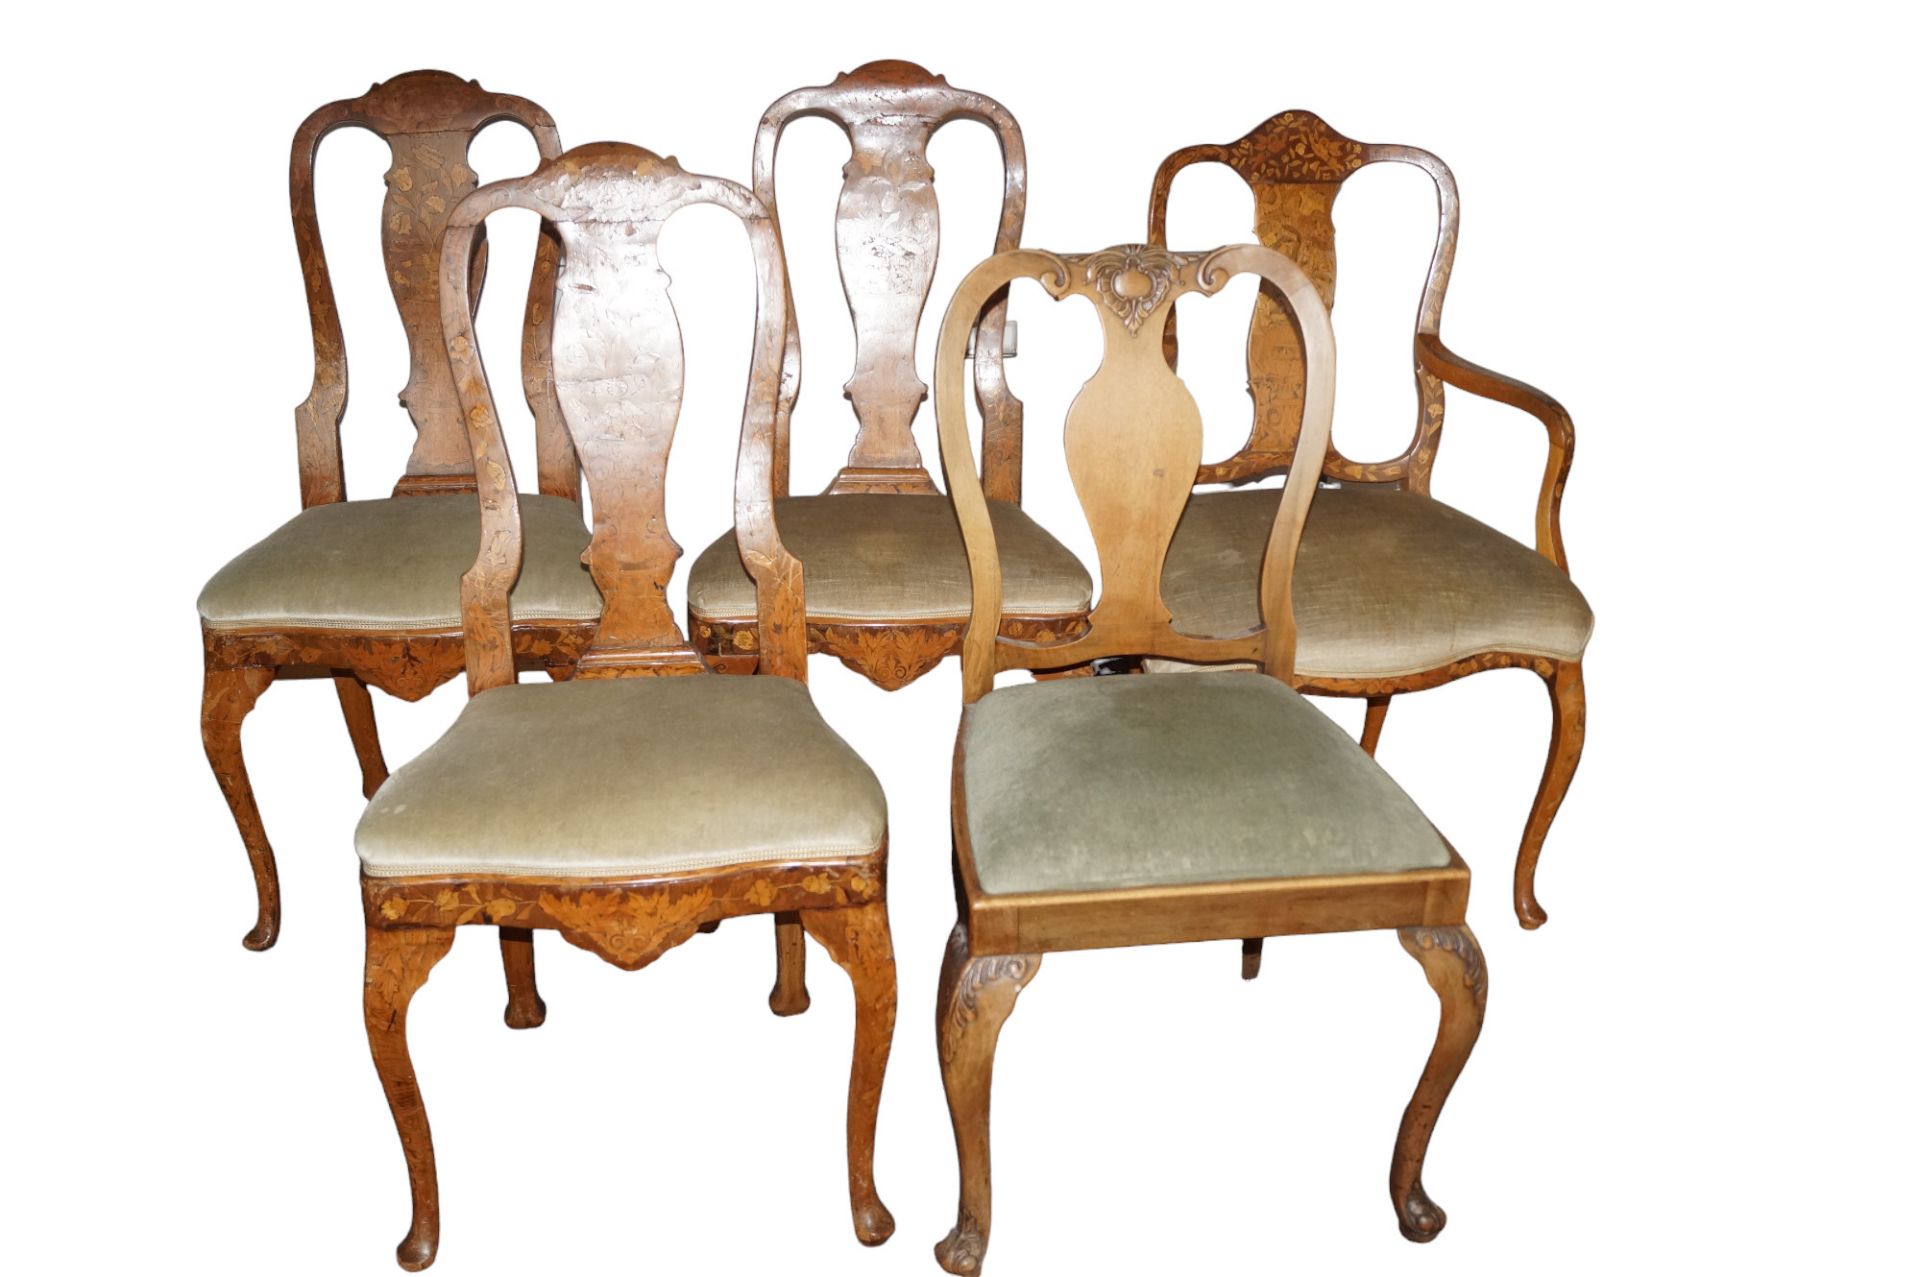 5 Stühle aus der Zeit des Barock; davon ein Stuhl mit Armlehnen, vier ohne Armlehnen; alle Stühle i